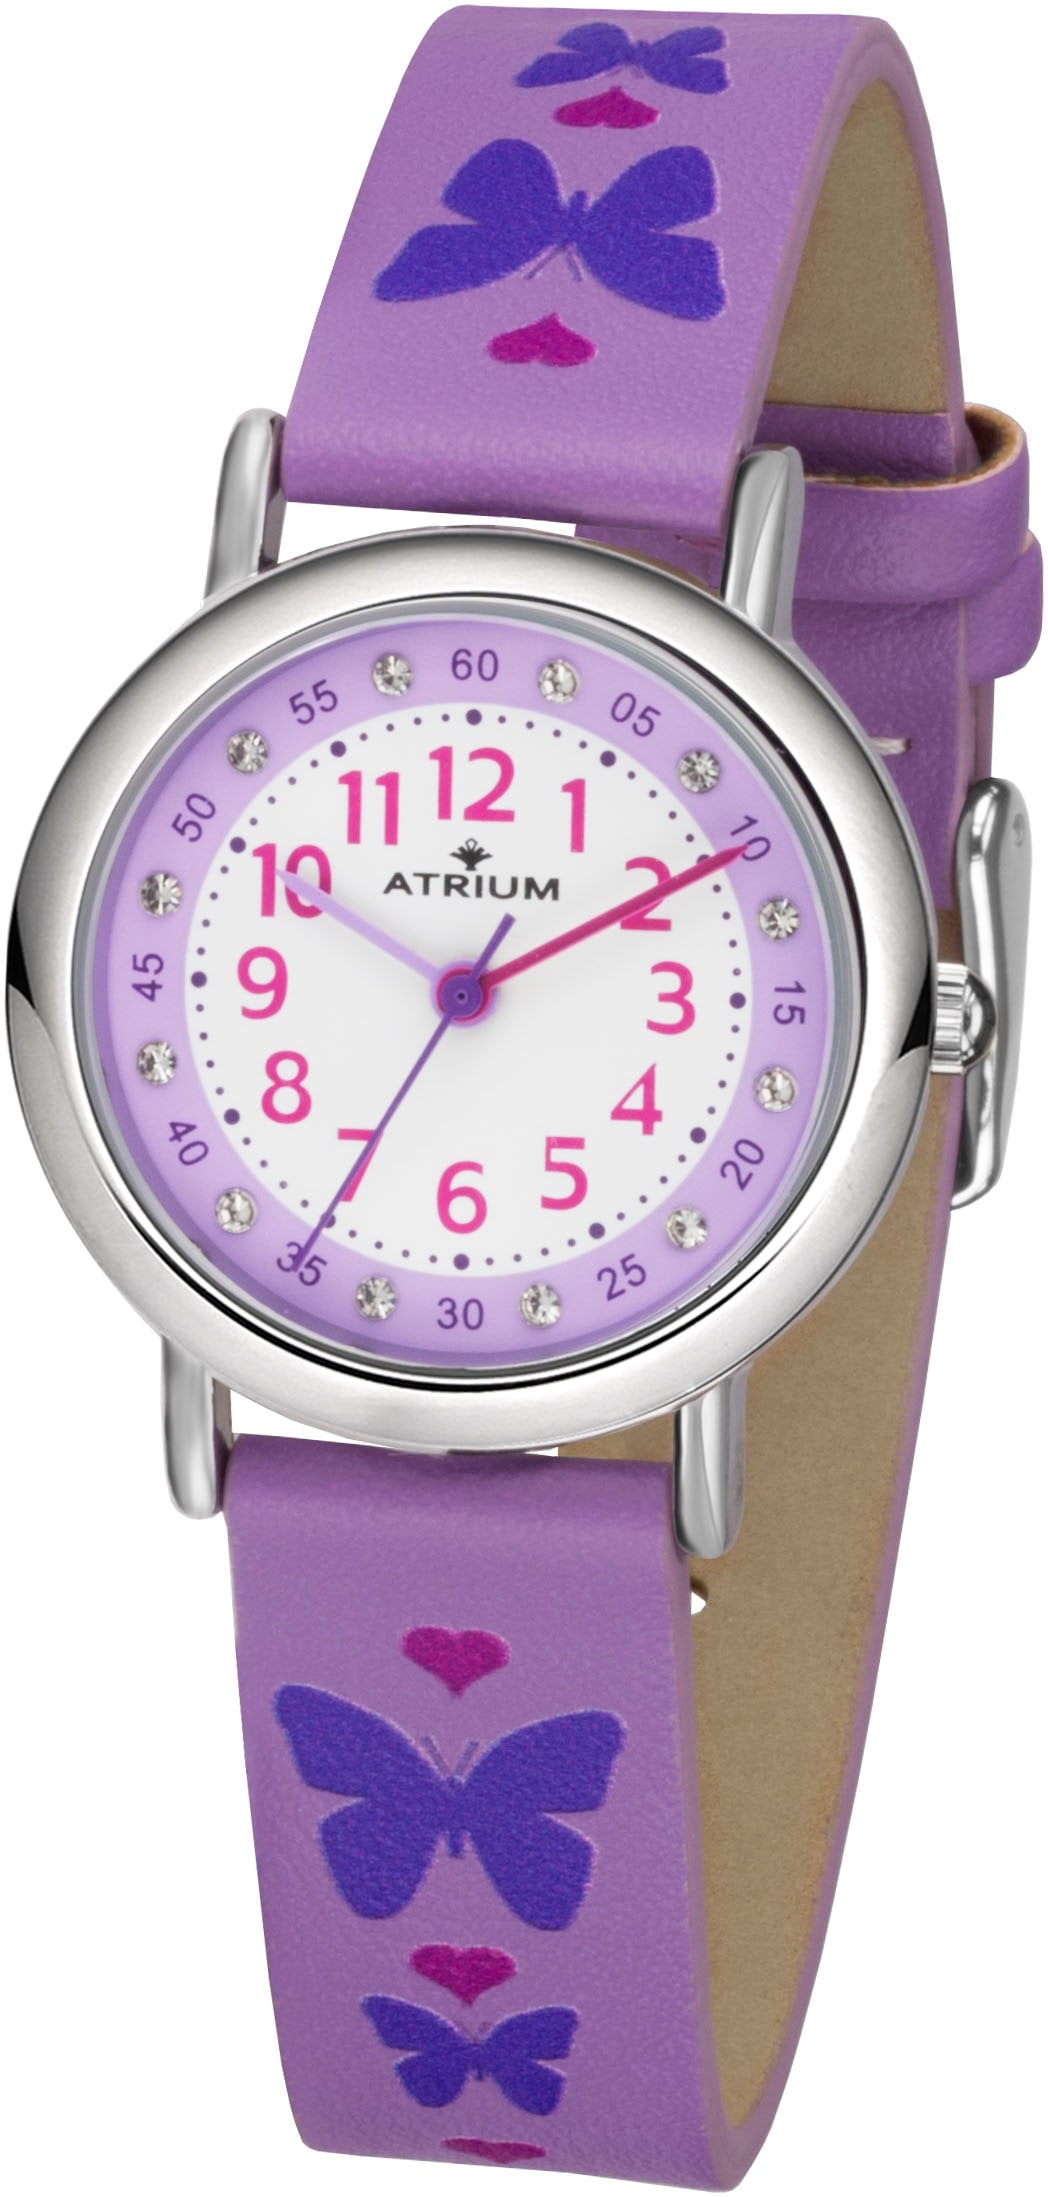 Atrium Quarzuhr, Armbanduhr, Kinderuhr, Mädchenuhr, Lernuhr, ideal auch als Geschenk